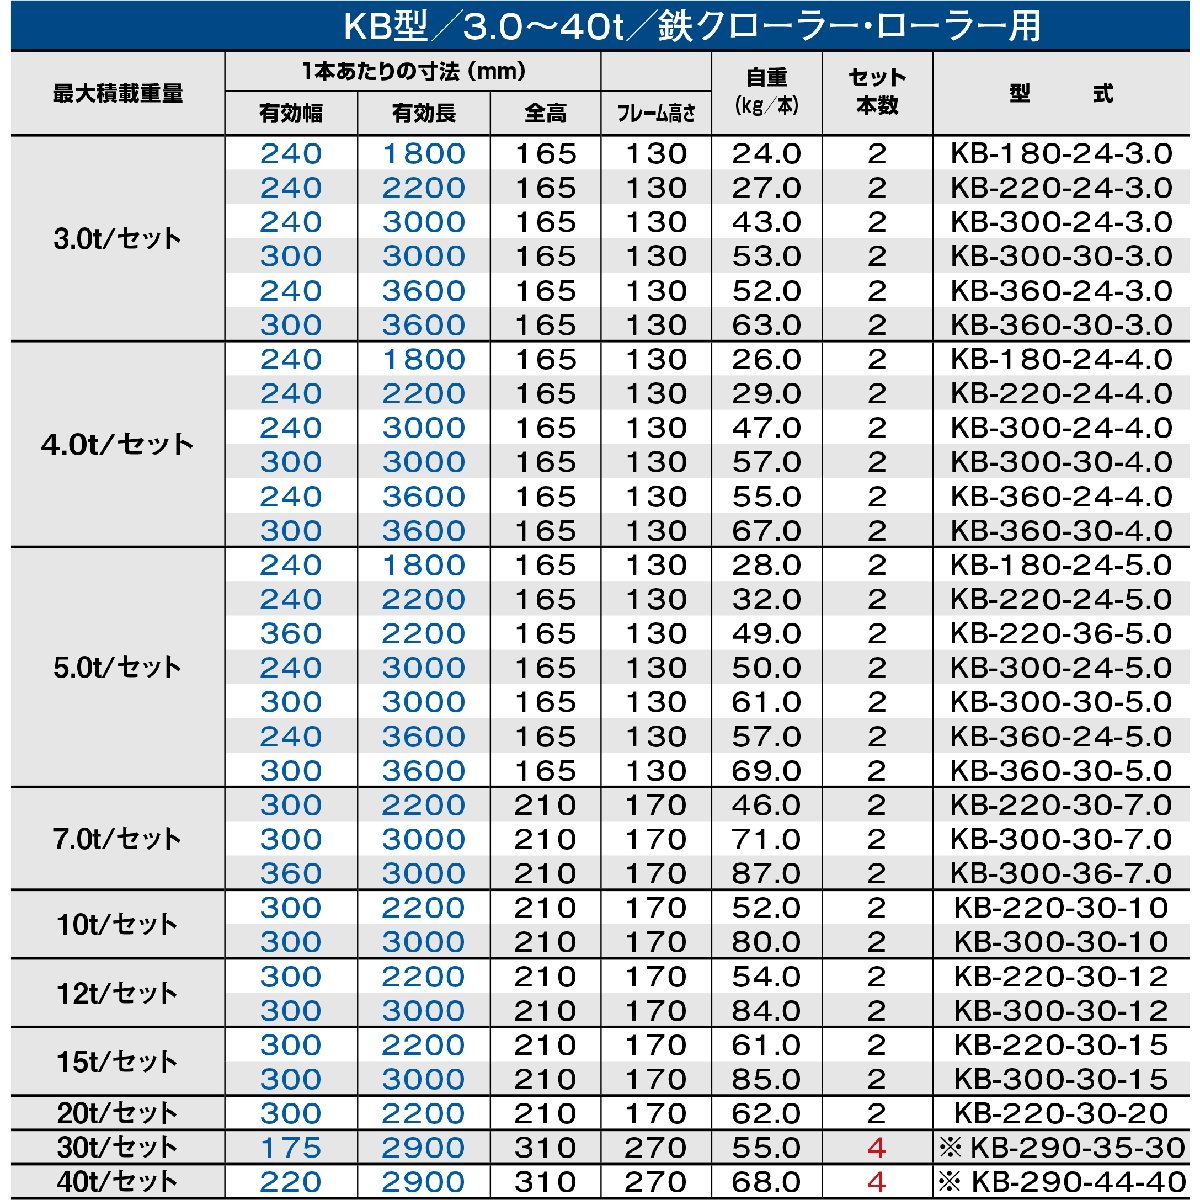 昭和アルミブリッジ KB-300-24-5.0 5.0t(5t) ツメ式 全長3000/有効幅240(mm) 2本 組_画像3